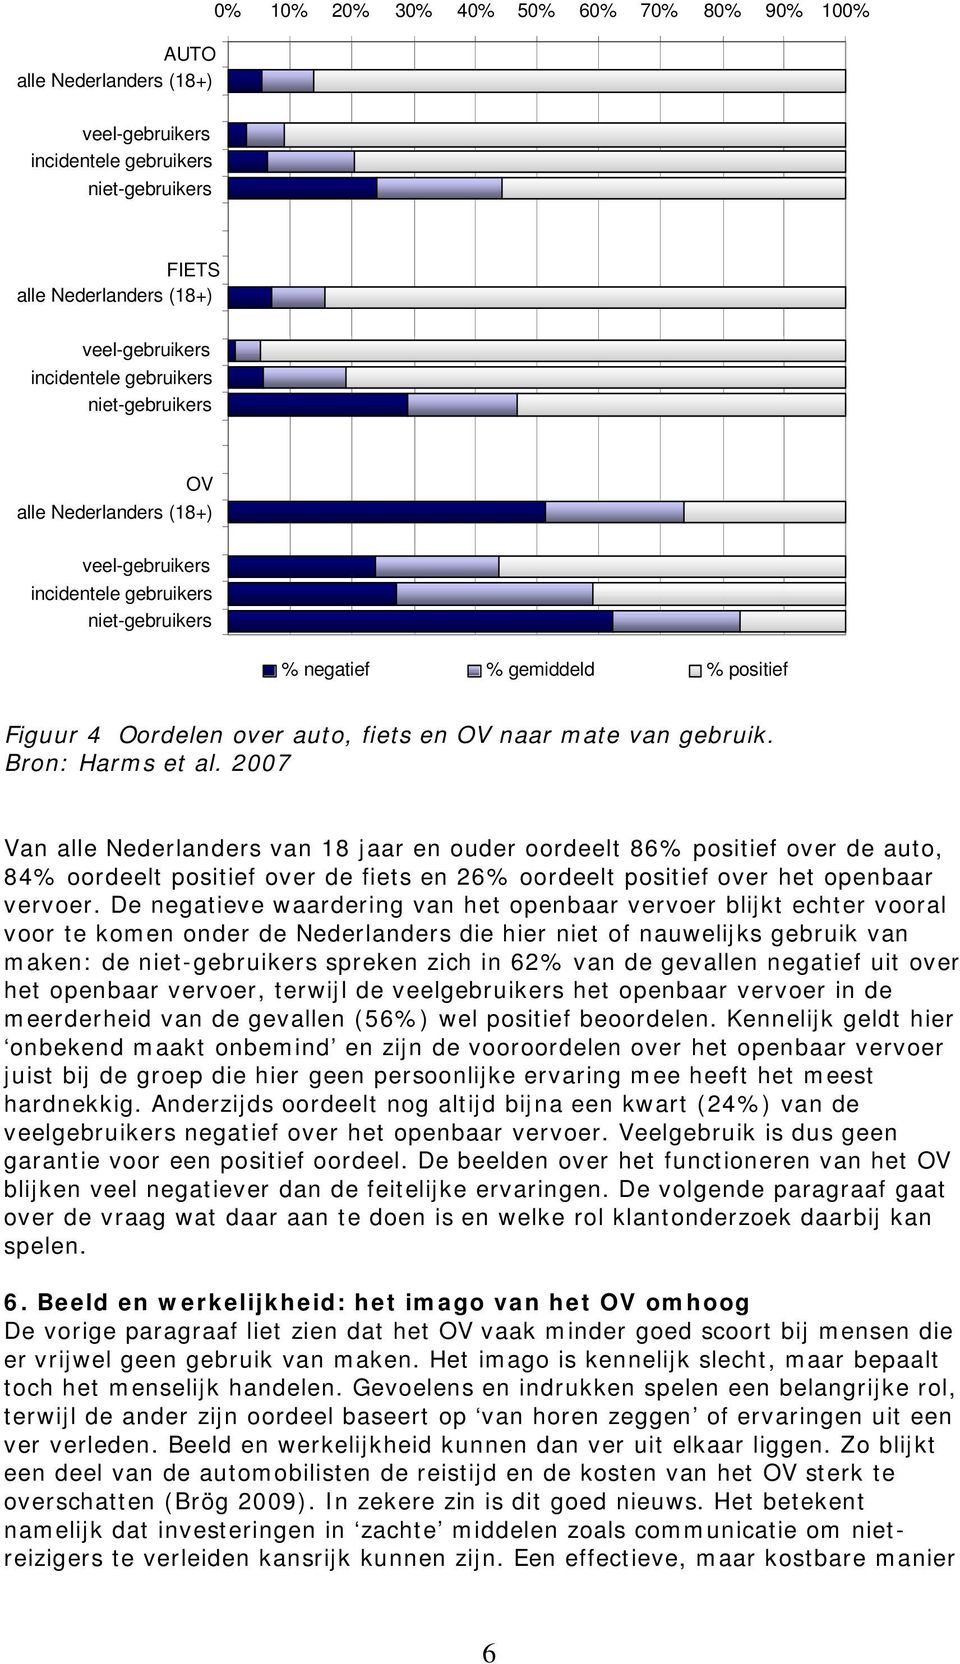 Bron: Harms et al. 2007 Van alle Nederlanders van 18 jaar en ouder oordeelt 86% positief over de auto, 84% oordeelt positief over de fiets en 26% oordeelt positief over het openbaar vervoer.